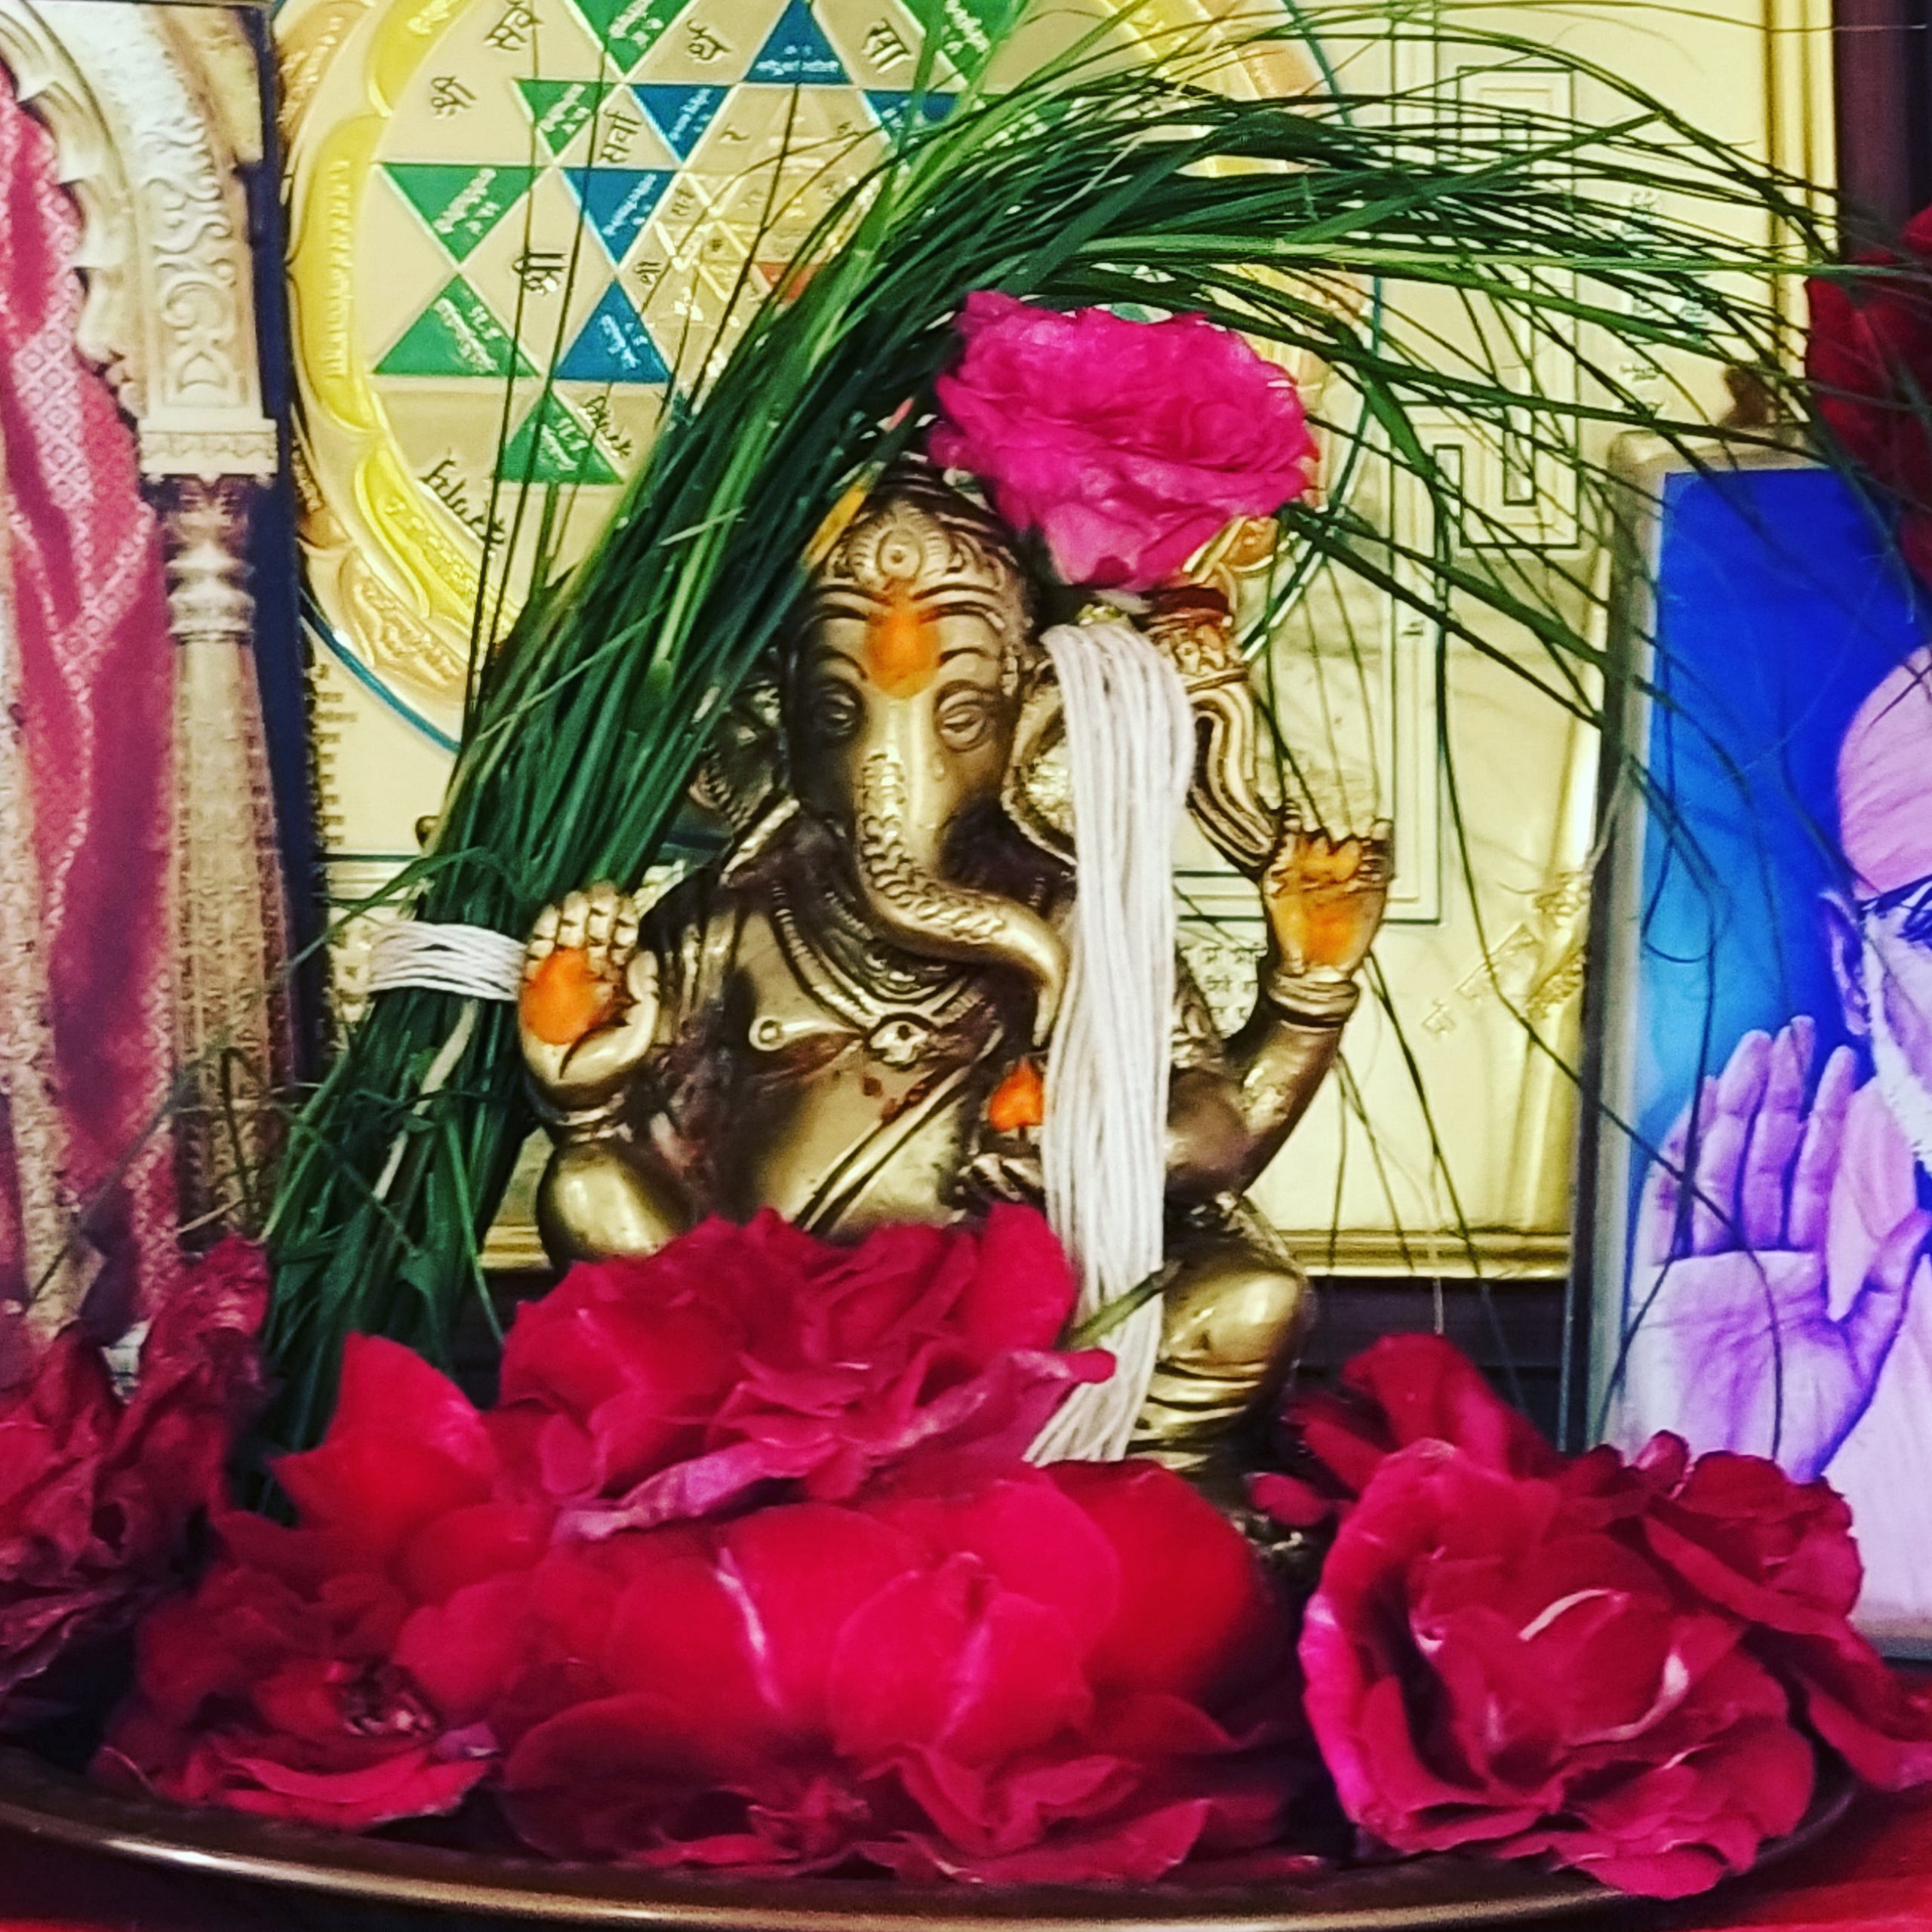 Ganpati idol at place of worship